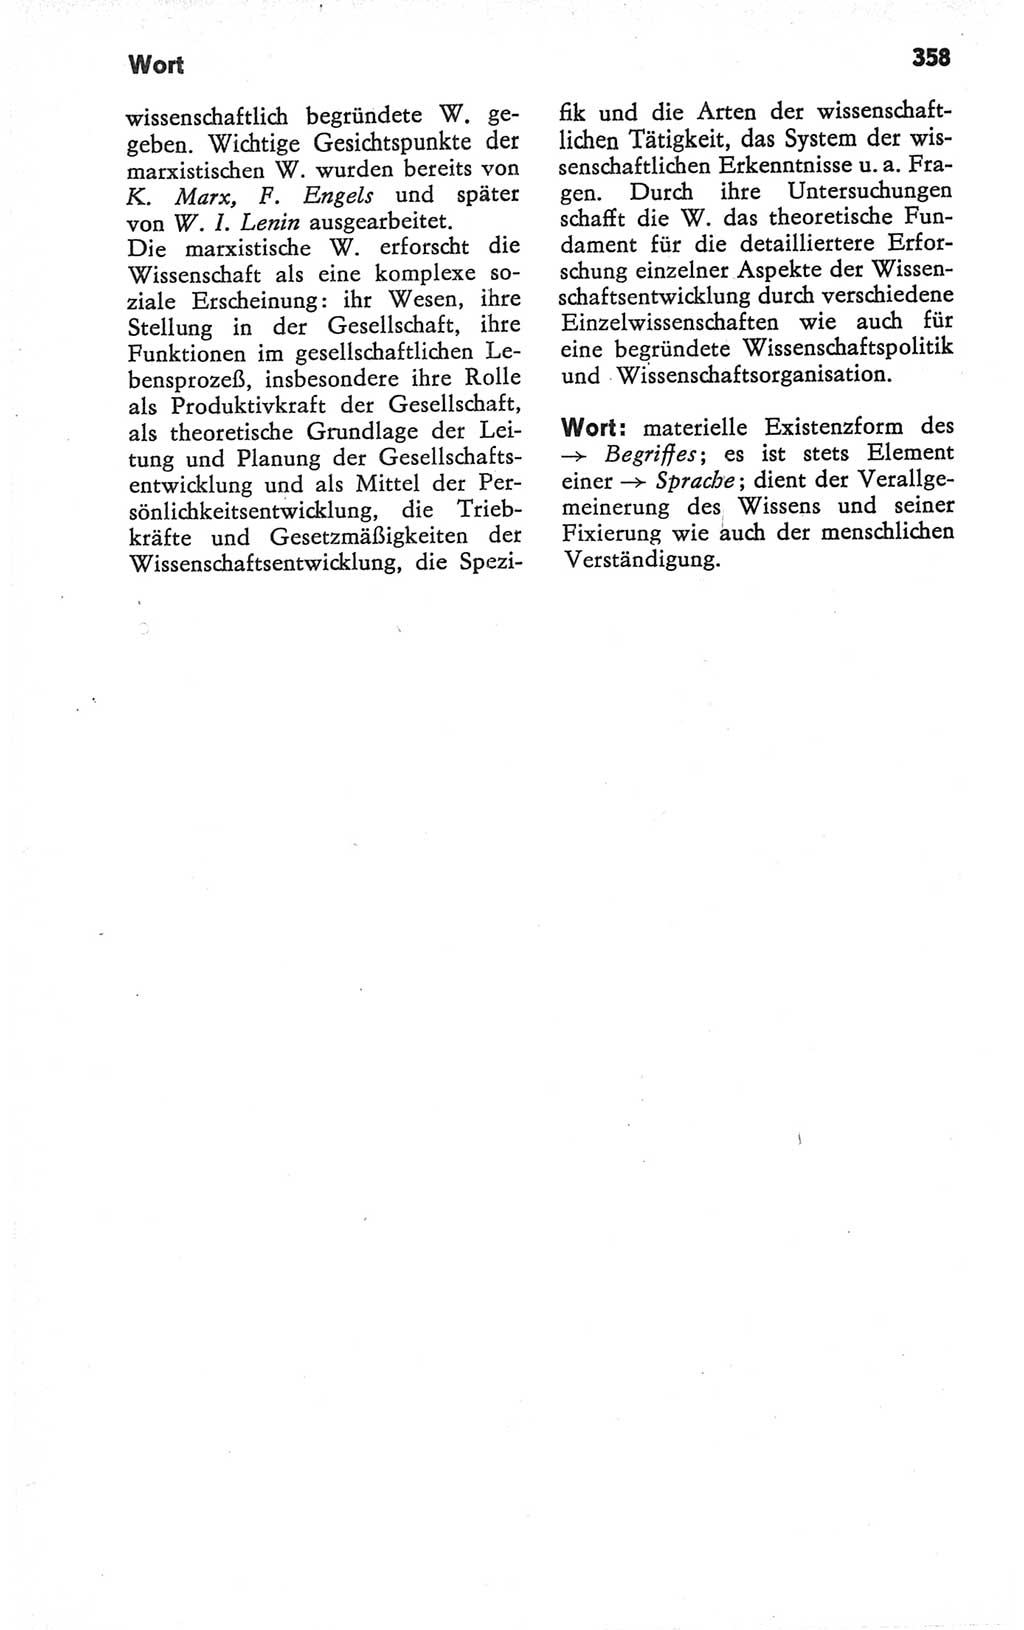 Kleines Wörterbuch der marxistisch-leninistischen Philosophie [Deutsche Demokratische Republik (DDR)] 1979, Seite 358 (Kl. Wb. ML Phil. DDR 1979, S. 358)